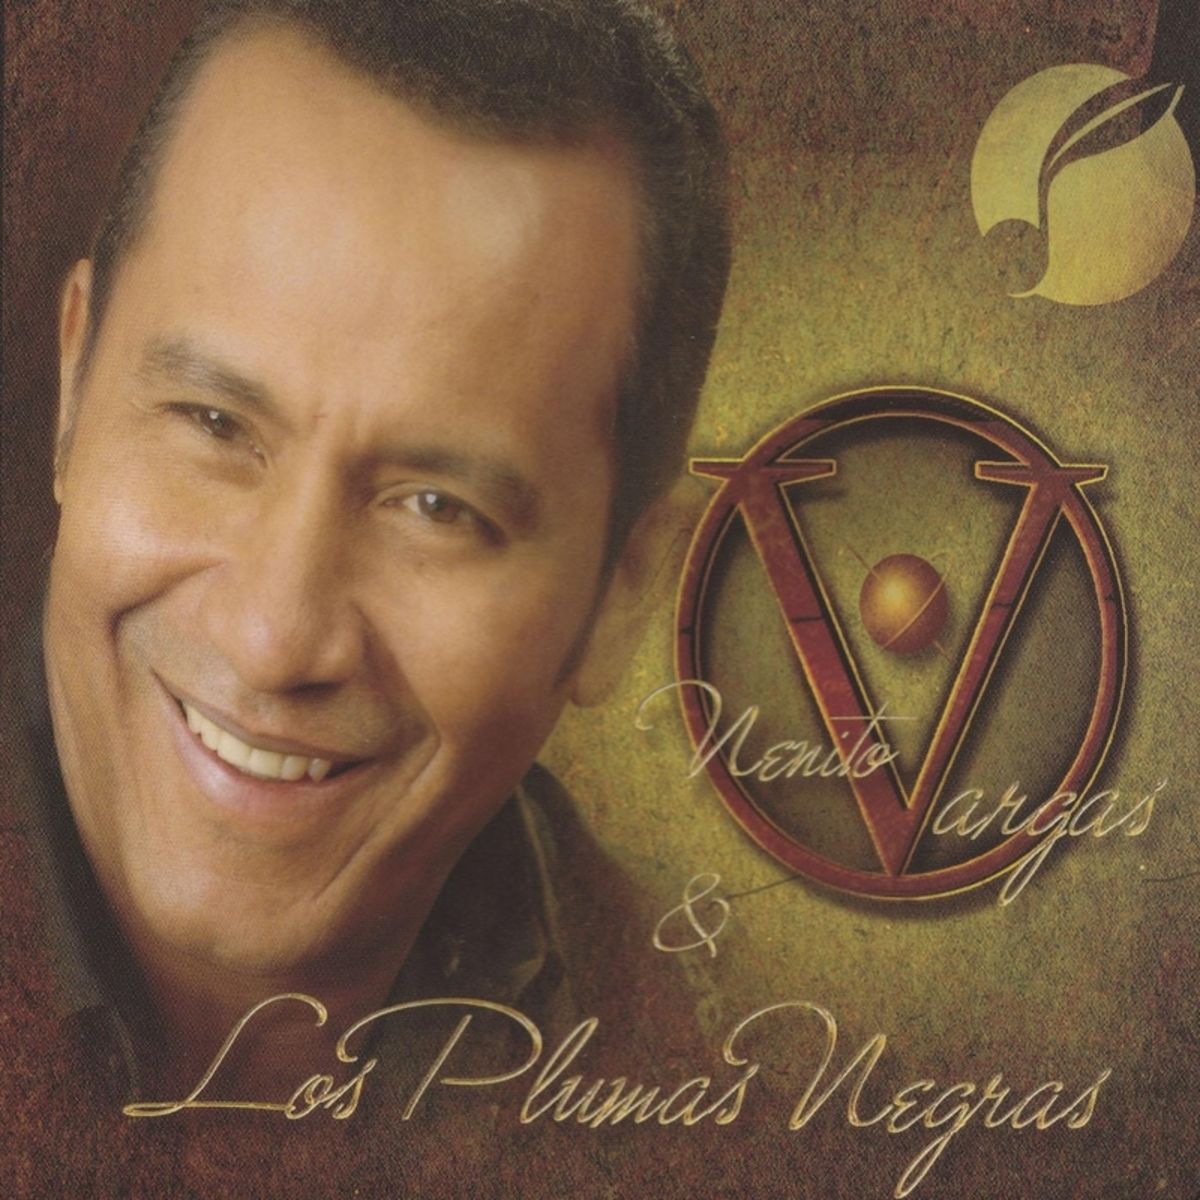 5 - Nenito Vargas y los Plumas Negras - No Se Porque No Le Gusto.mp3